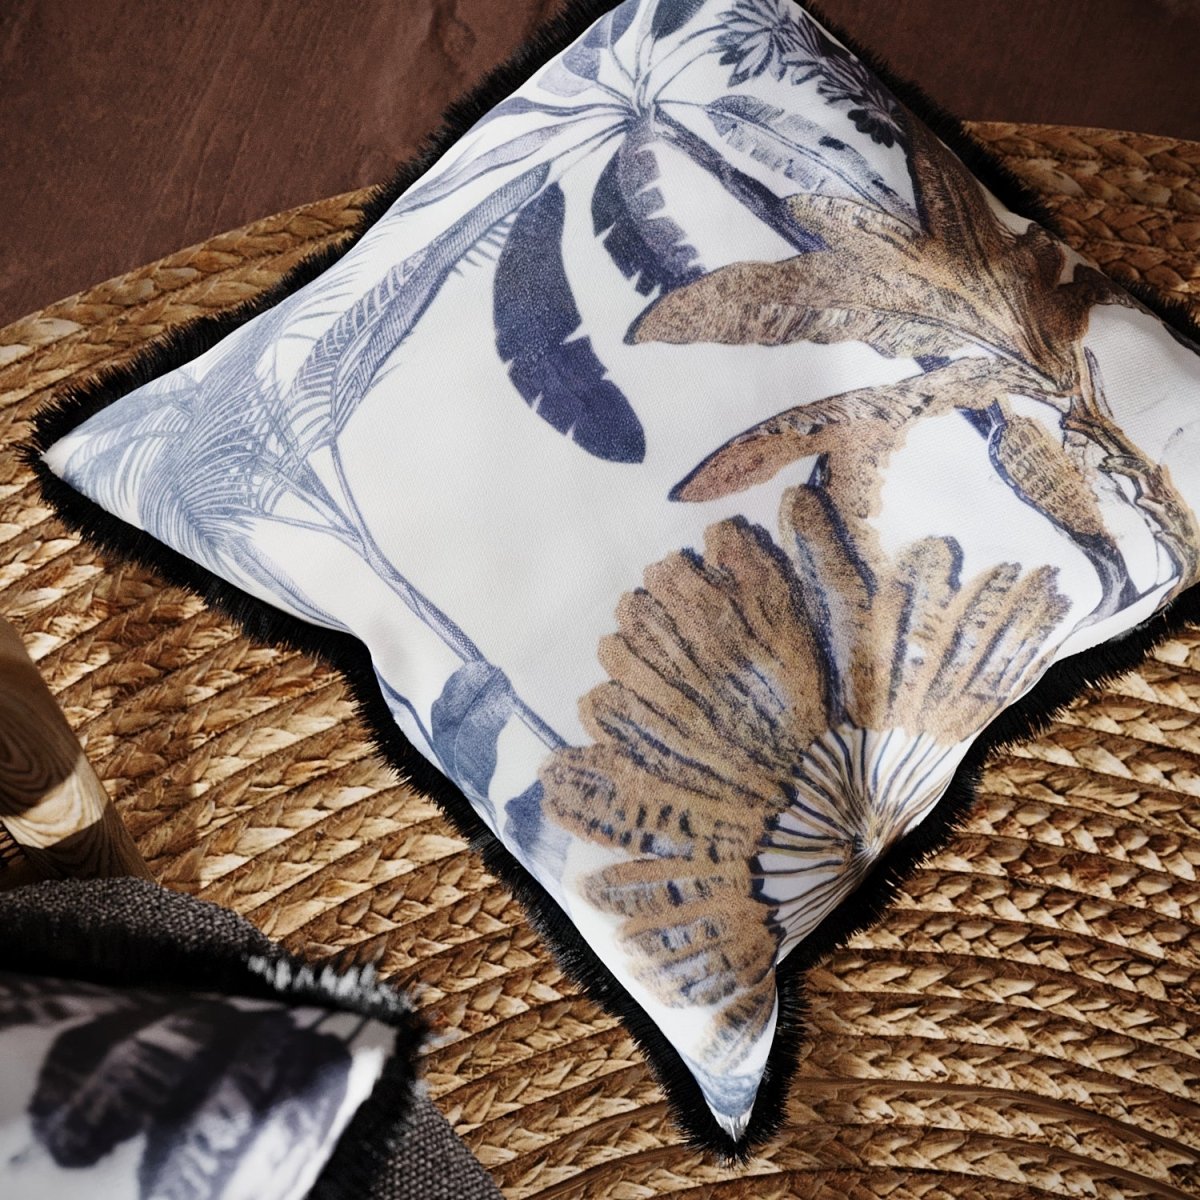 Intérieur de style bohème ou exotique : des coussins pour canapé, un ensemble de coussins à imprimé tropical pour la décoration du lit transforment le style chez vous